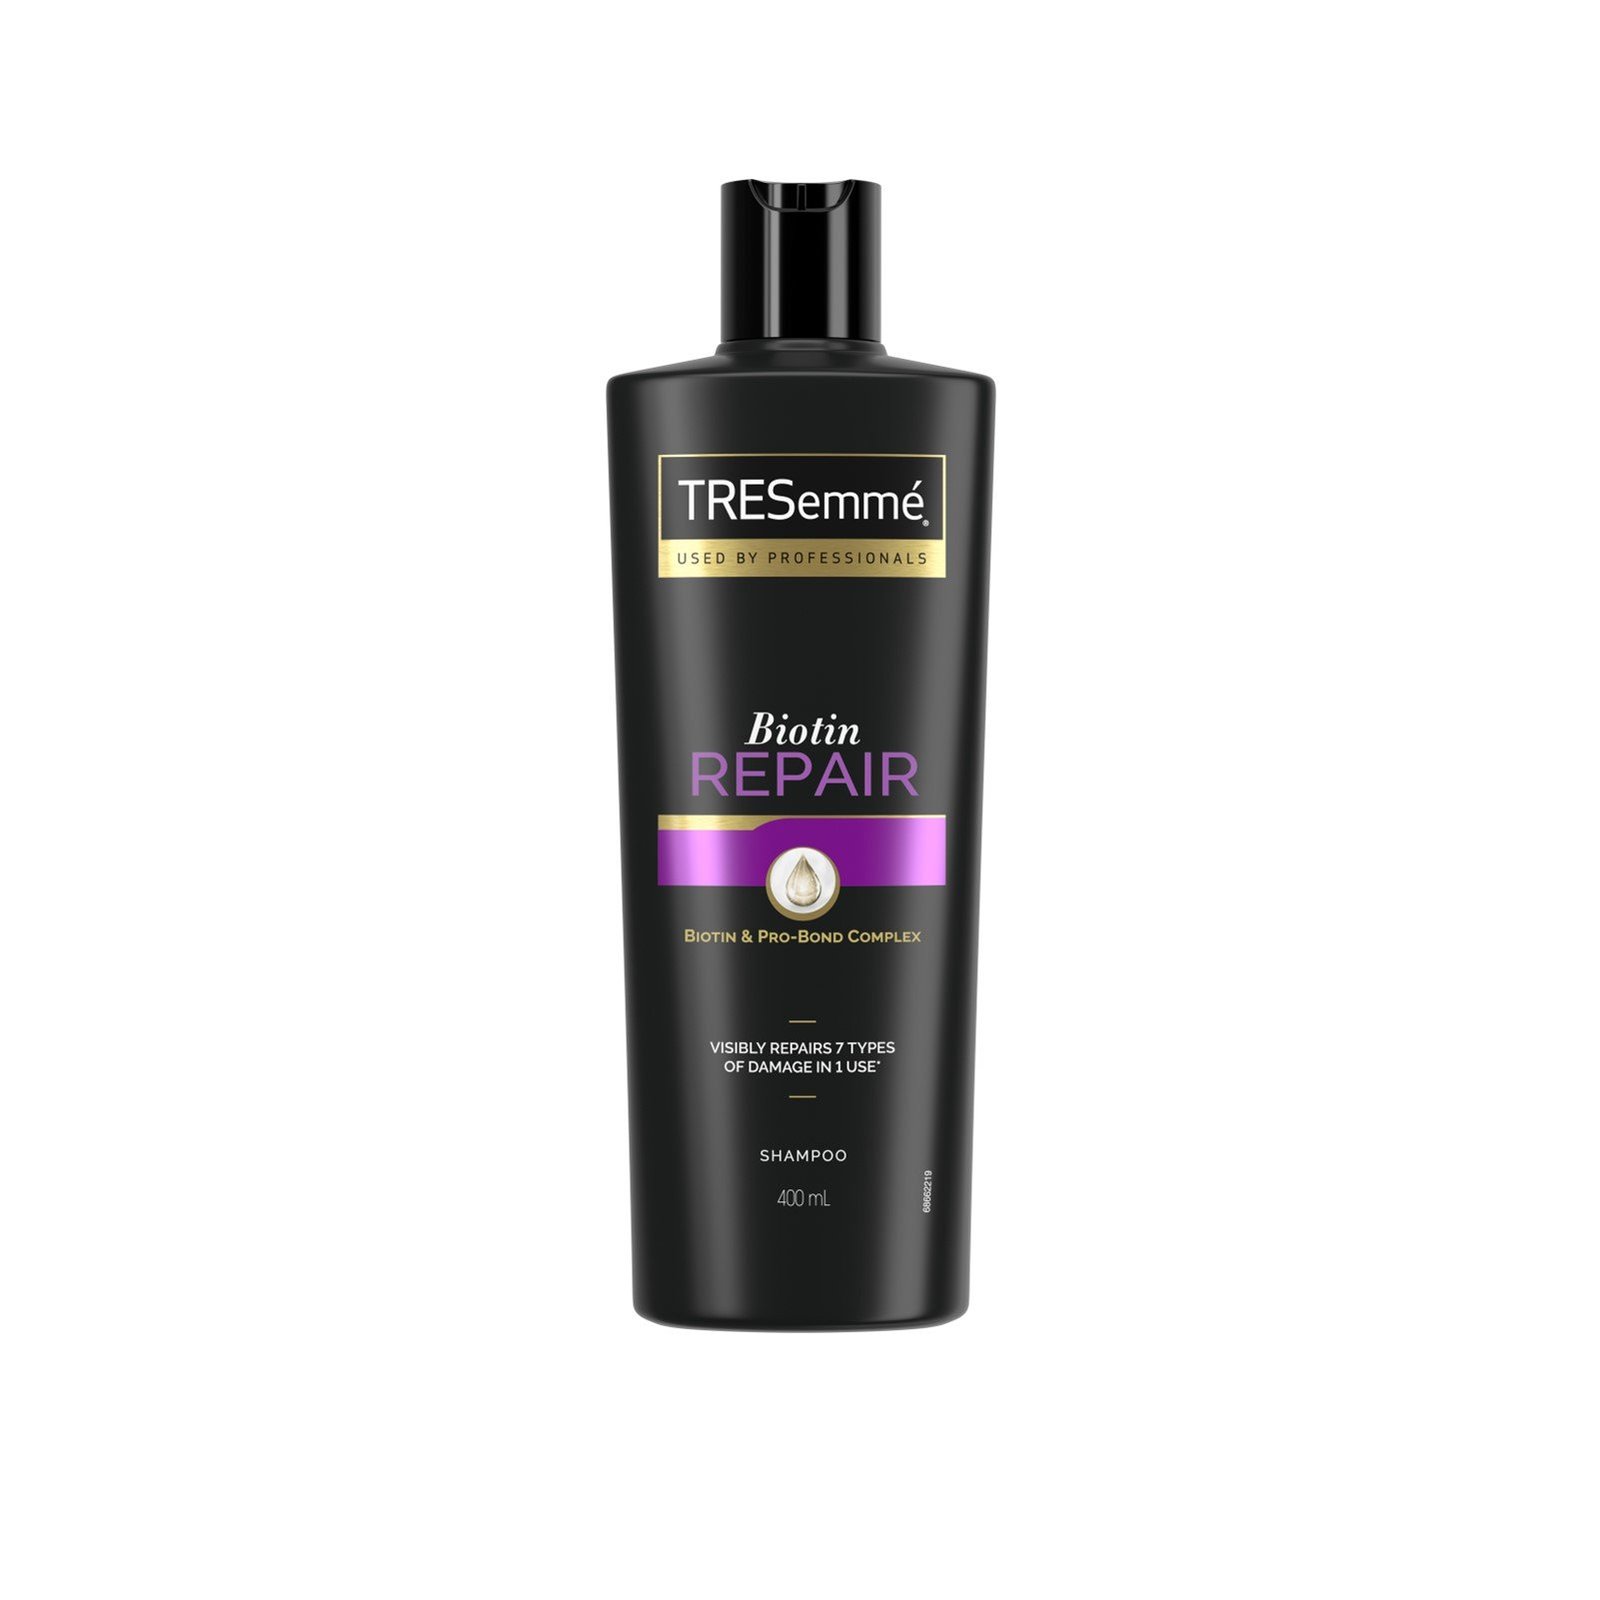 TRESemmé Biotin Repair Shampoo 400ml (13.5 fl oz)